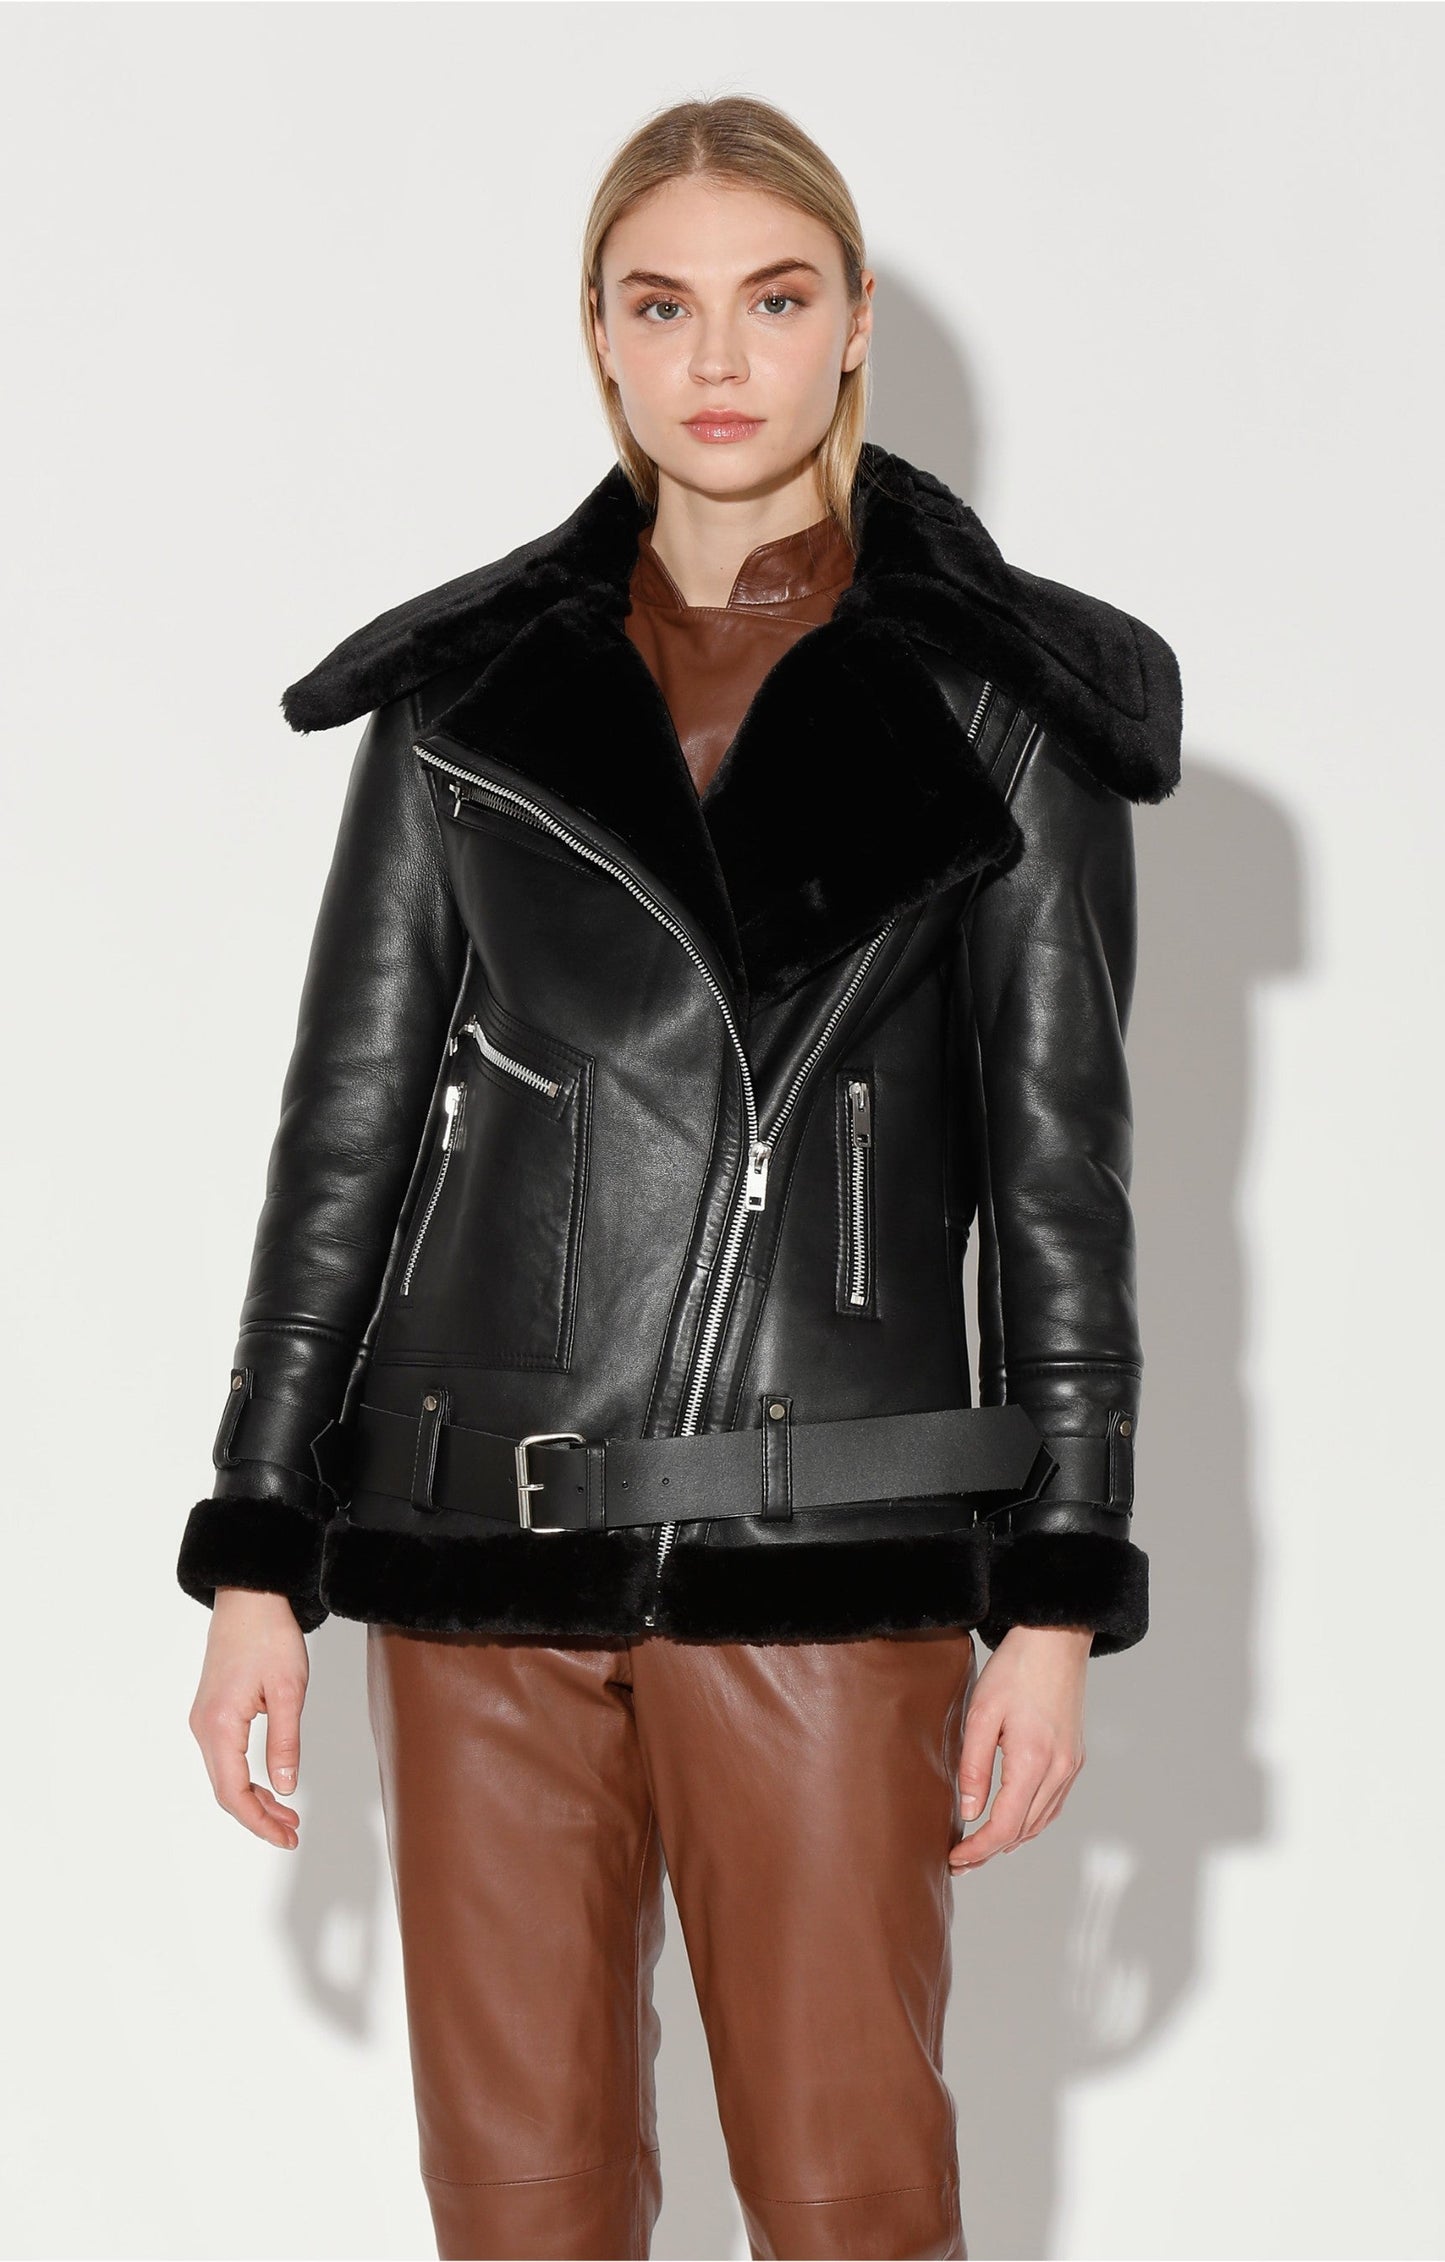 Celine Jacket, Black Leather/ Black Fur by Walter Baker